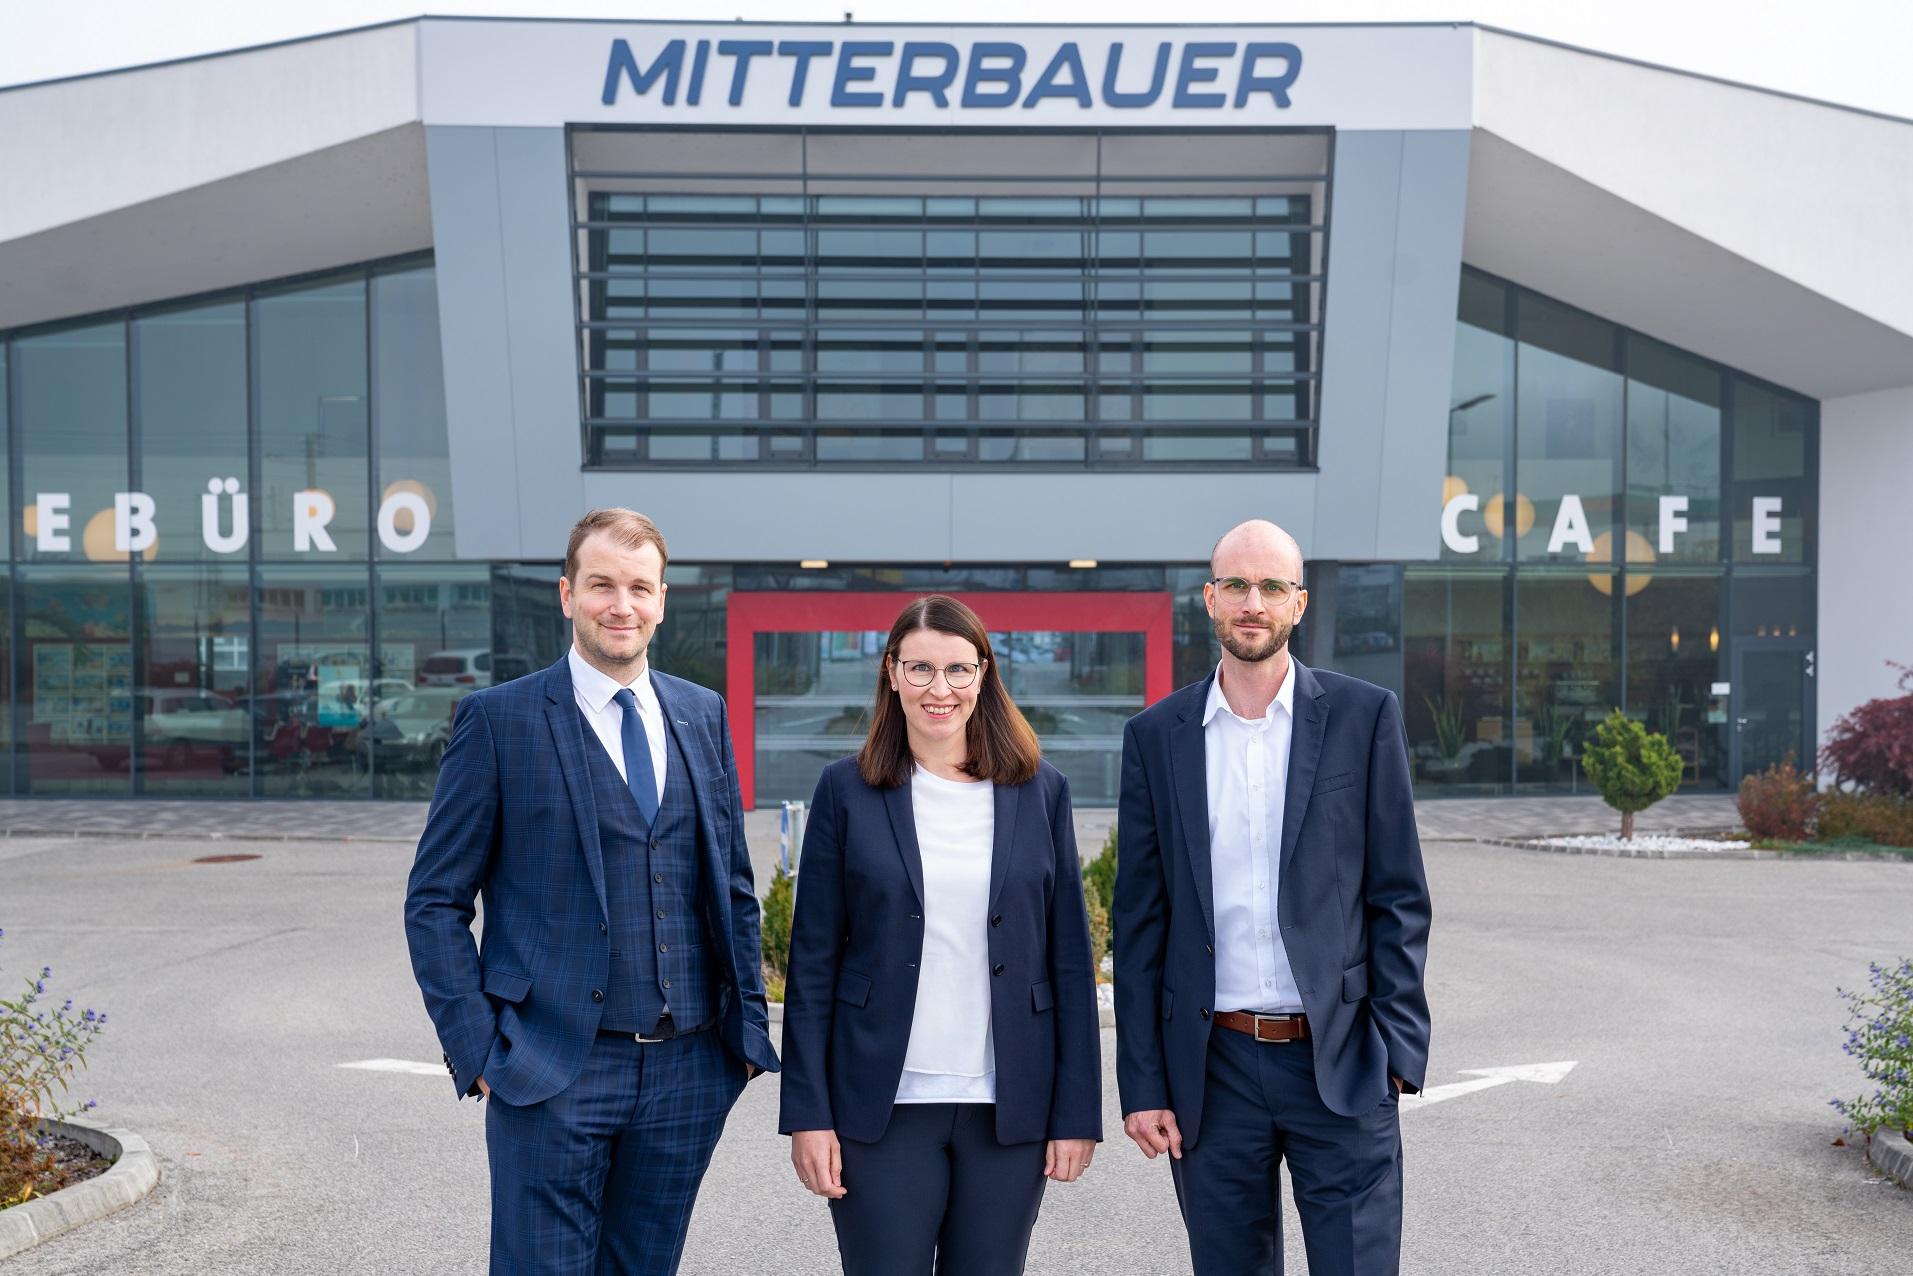 Mitterbauer Reisen & Logistik GmbH3